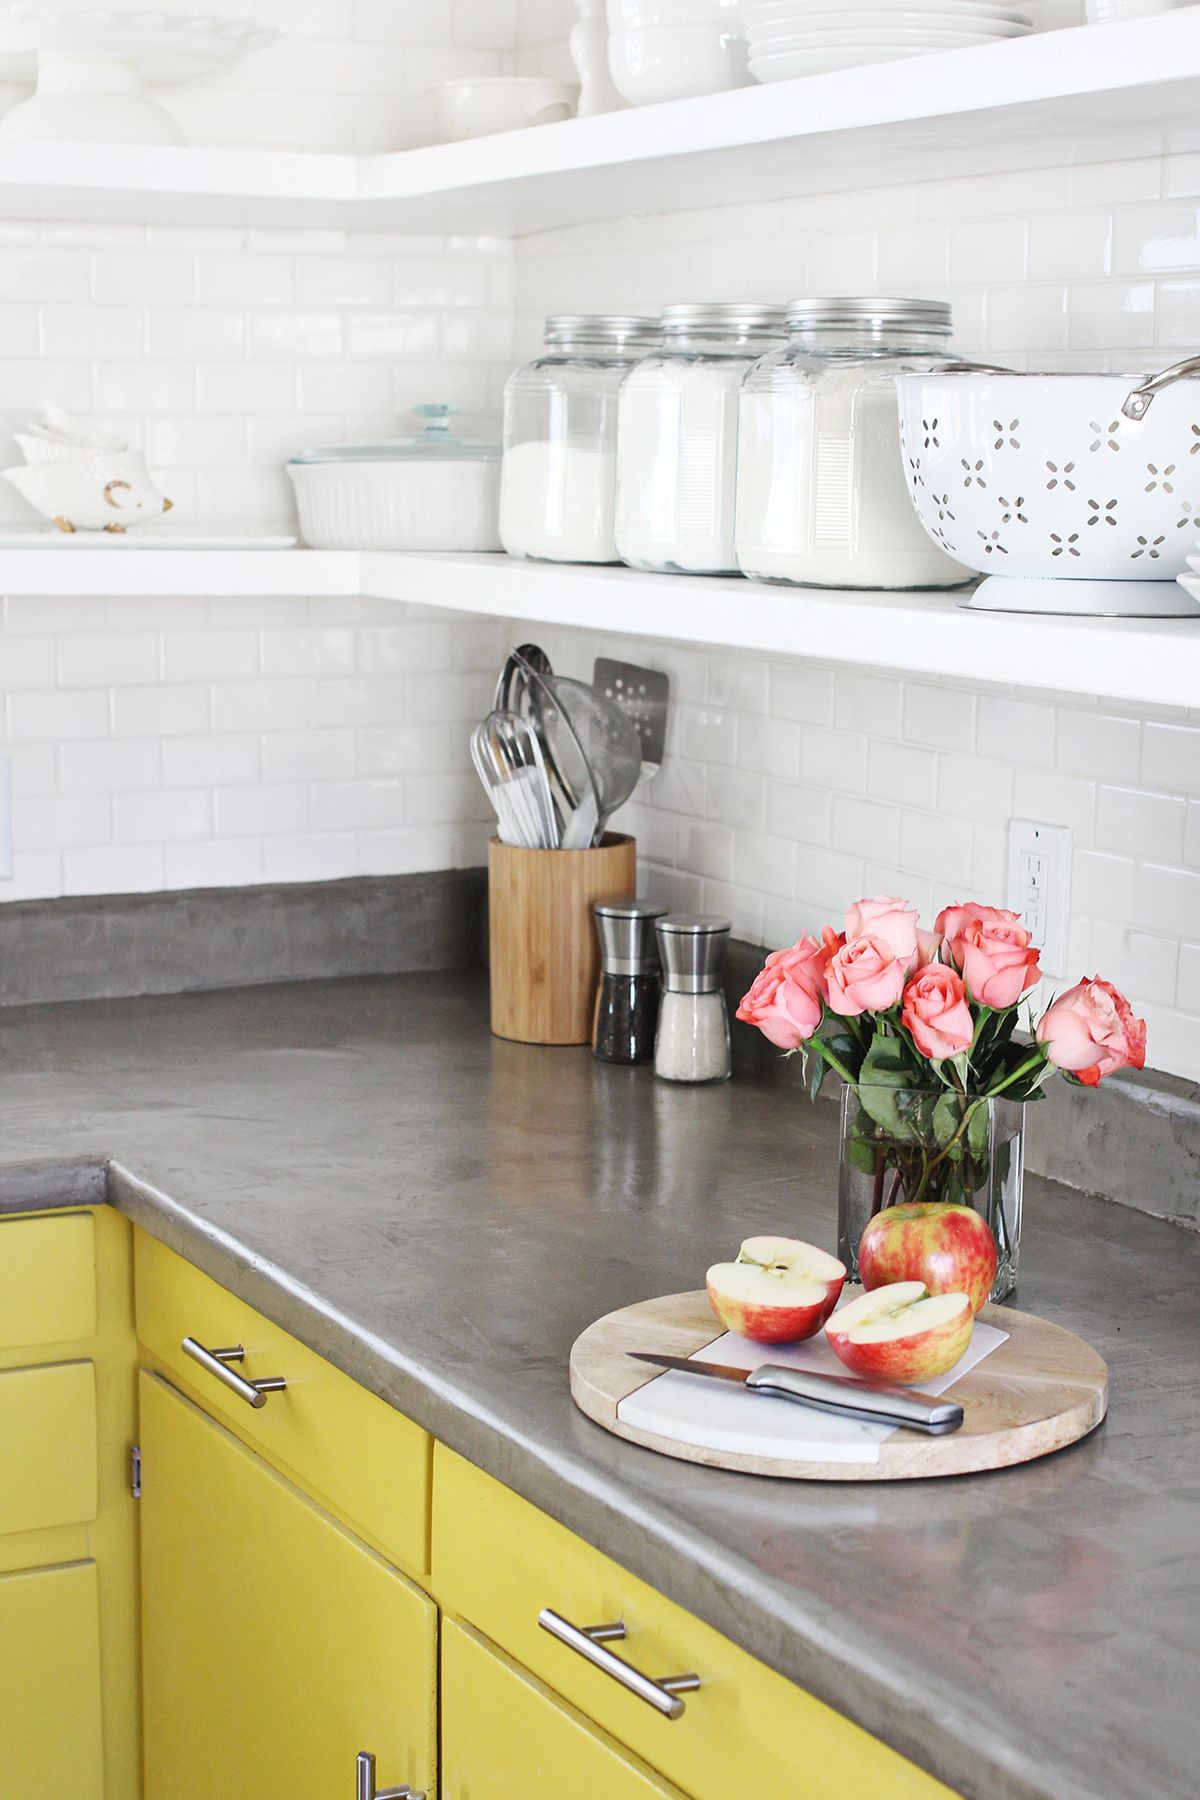  Màu vàng của hệ tủ bếp dưới khi song hành cùng màu xám của mặt bàn bê tông và sắc hoa hồng tươi thắm cho góc bếp thêm nổi bật và trẻ trung hơn hẳn!